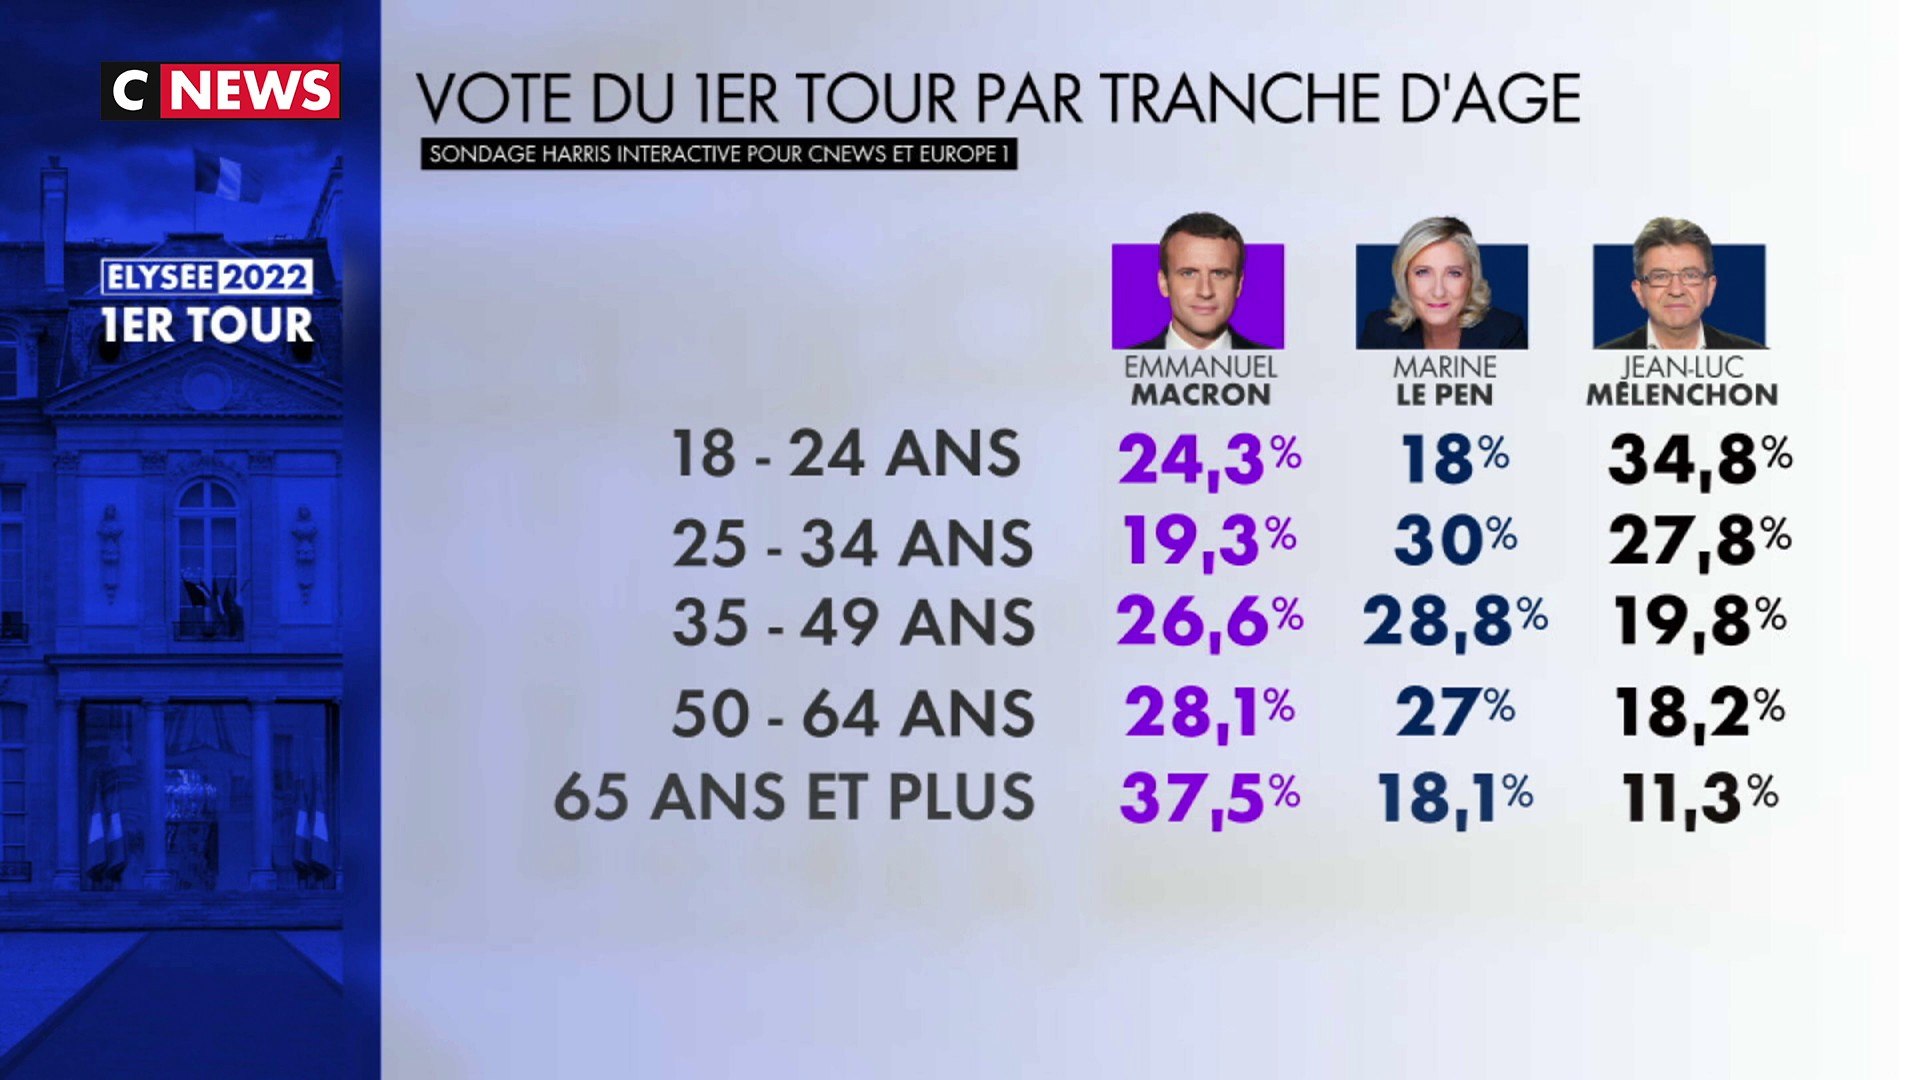 Les jeunes pour Jean-Luc Mélenchon, les seniors avec Emmanuel Macron...  Pour qui ont voté les différentes classes d'âge ? - Vidéo Dailymotion